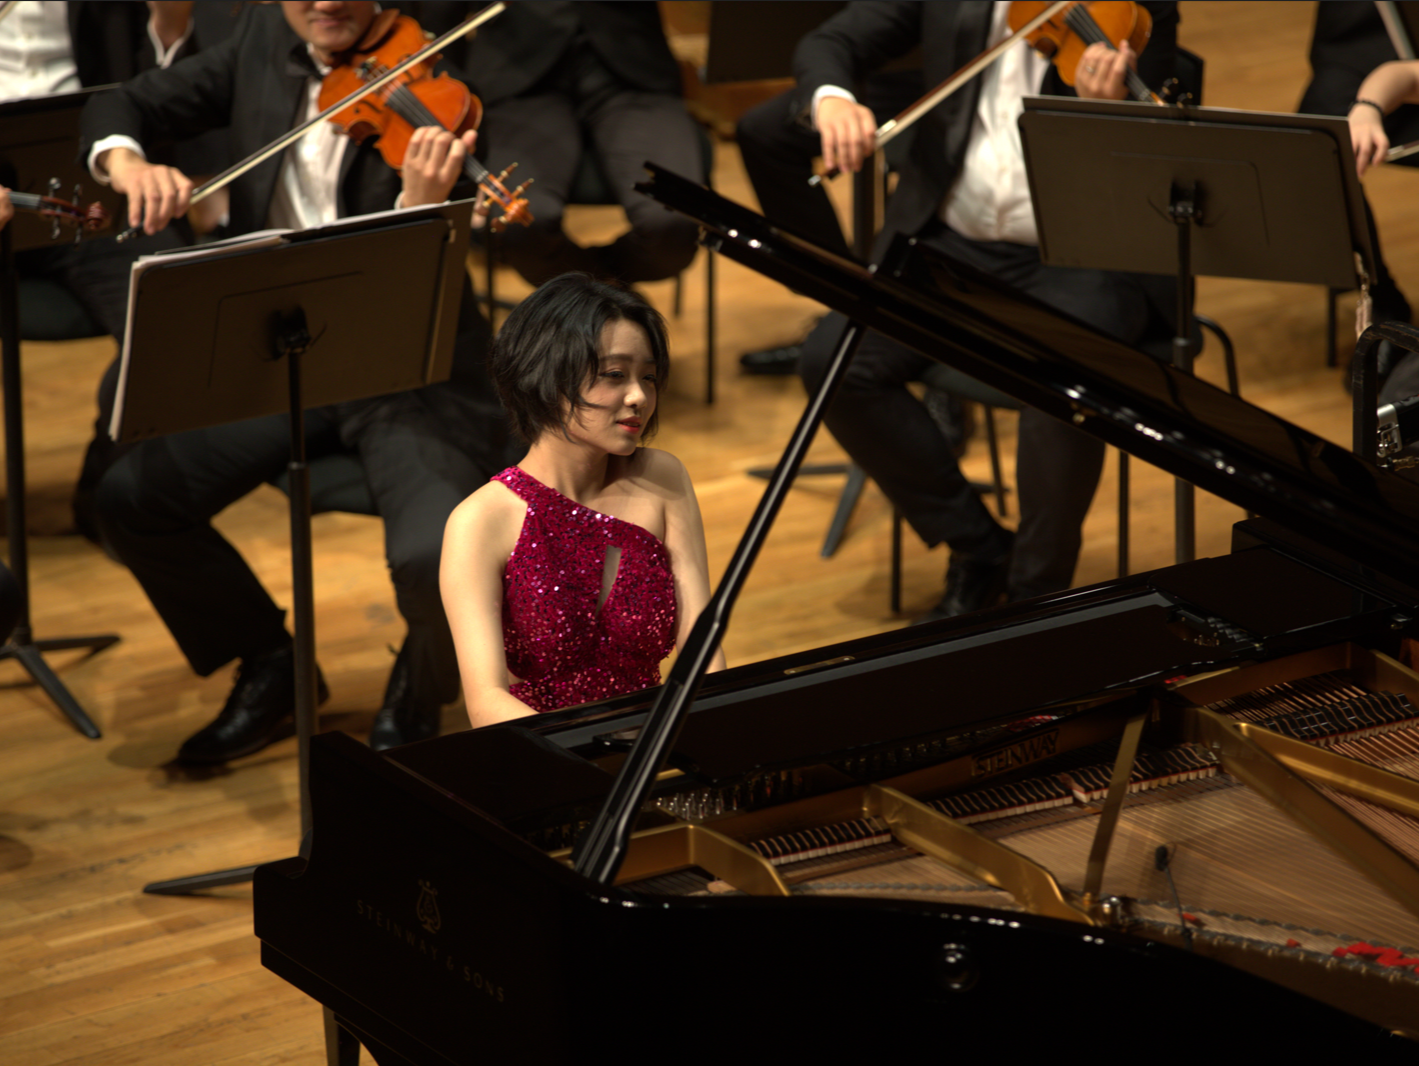 深圳钢琴音乐季“明日之星”在香港大会堂奏响鹏城强音